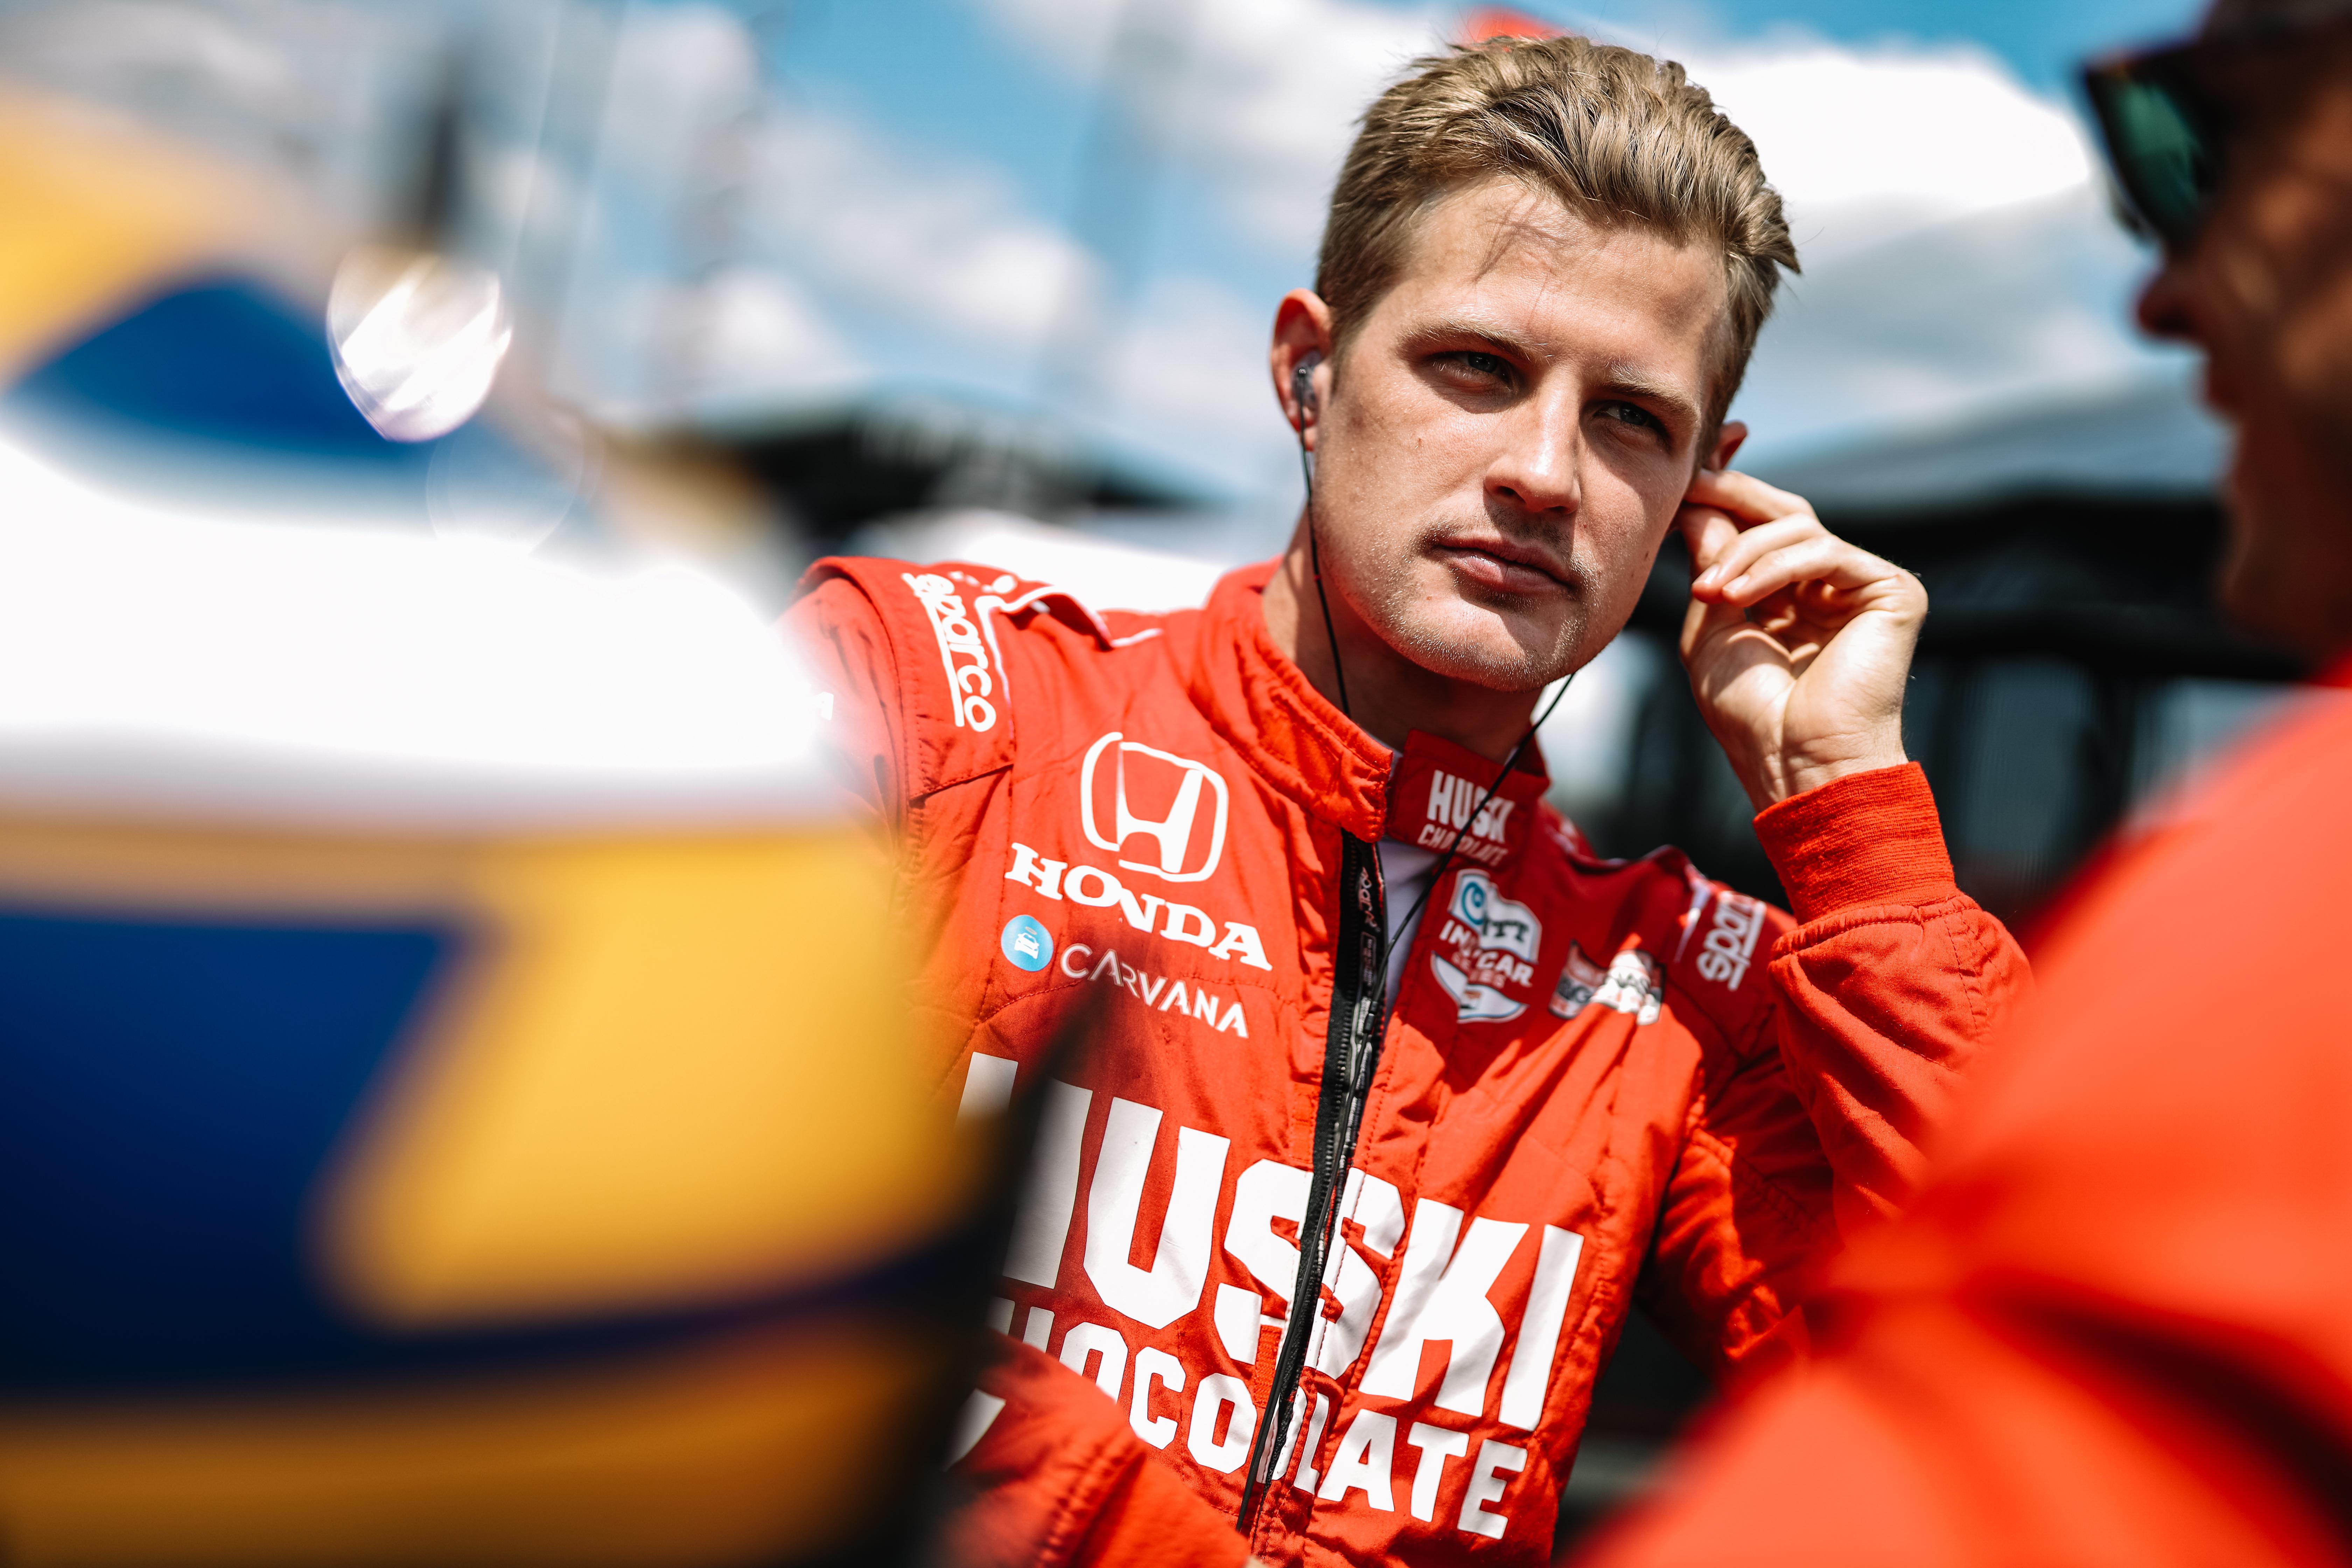 BREAKING: Az Andrettihez igazolt Marcus Ericsson